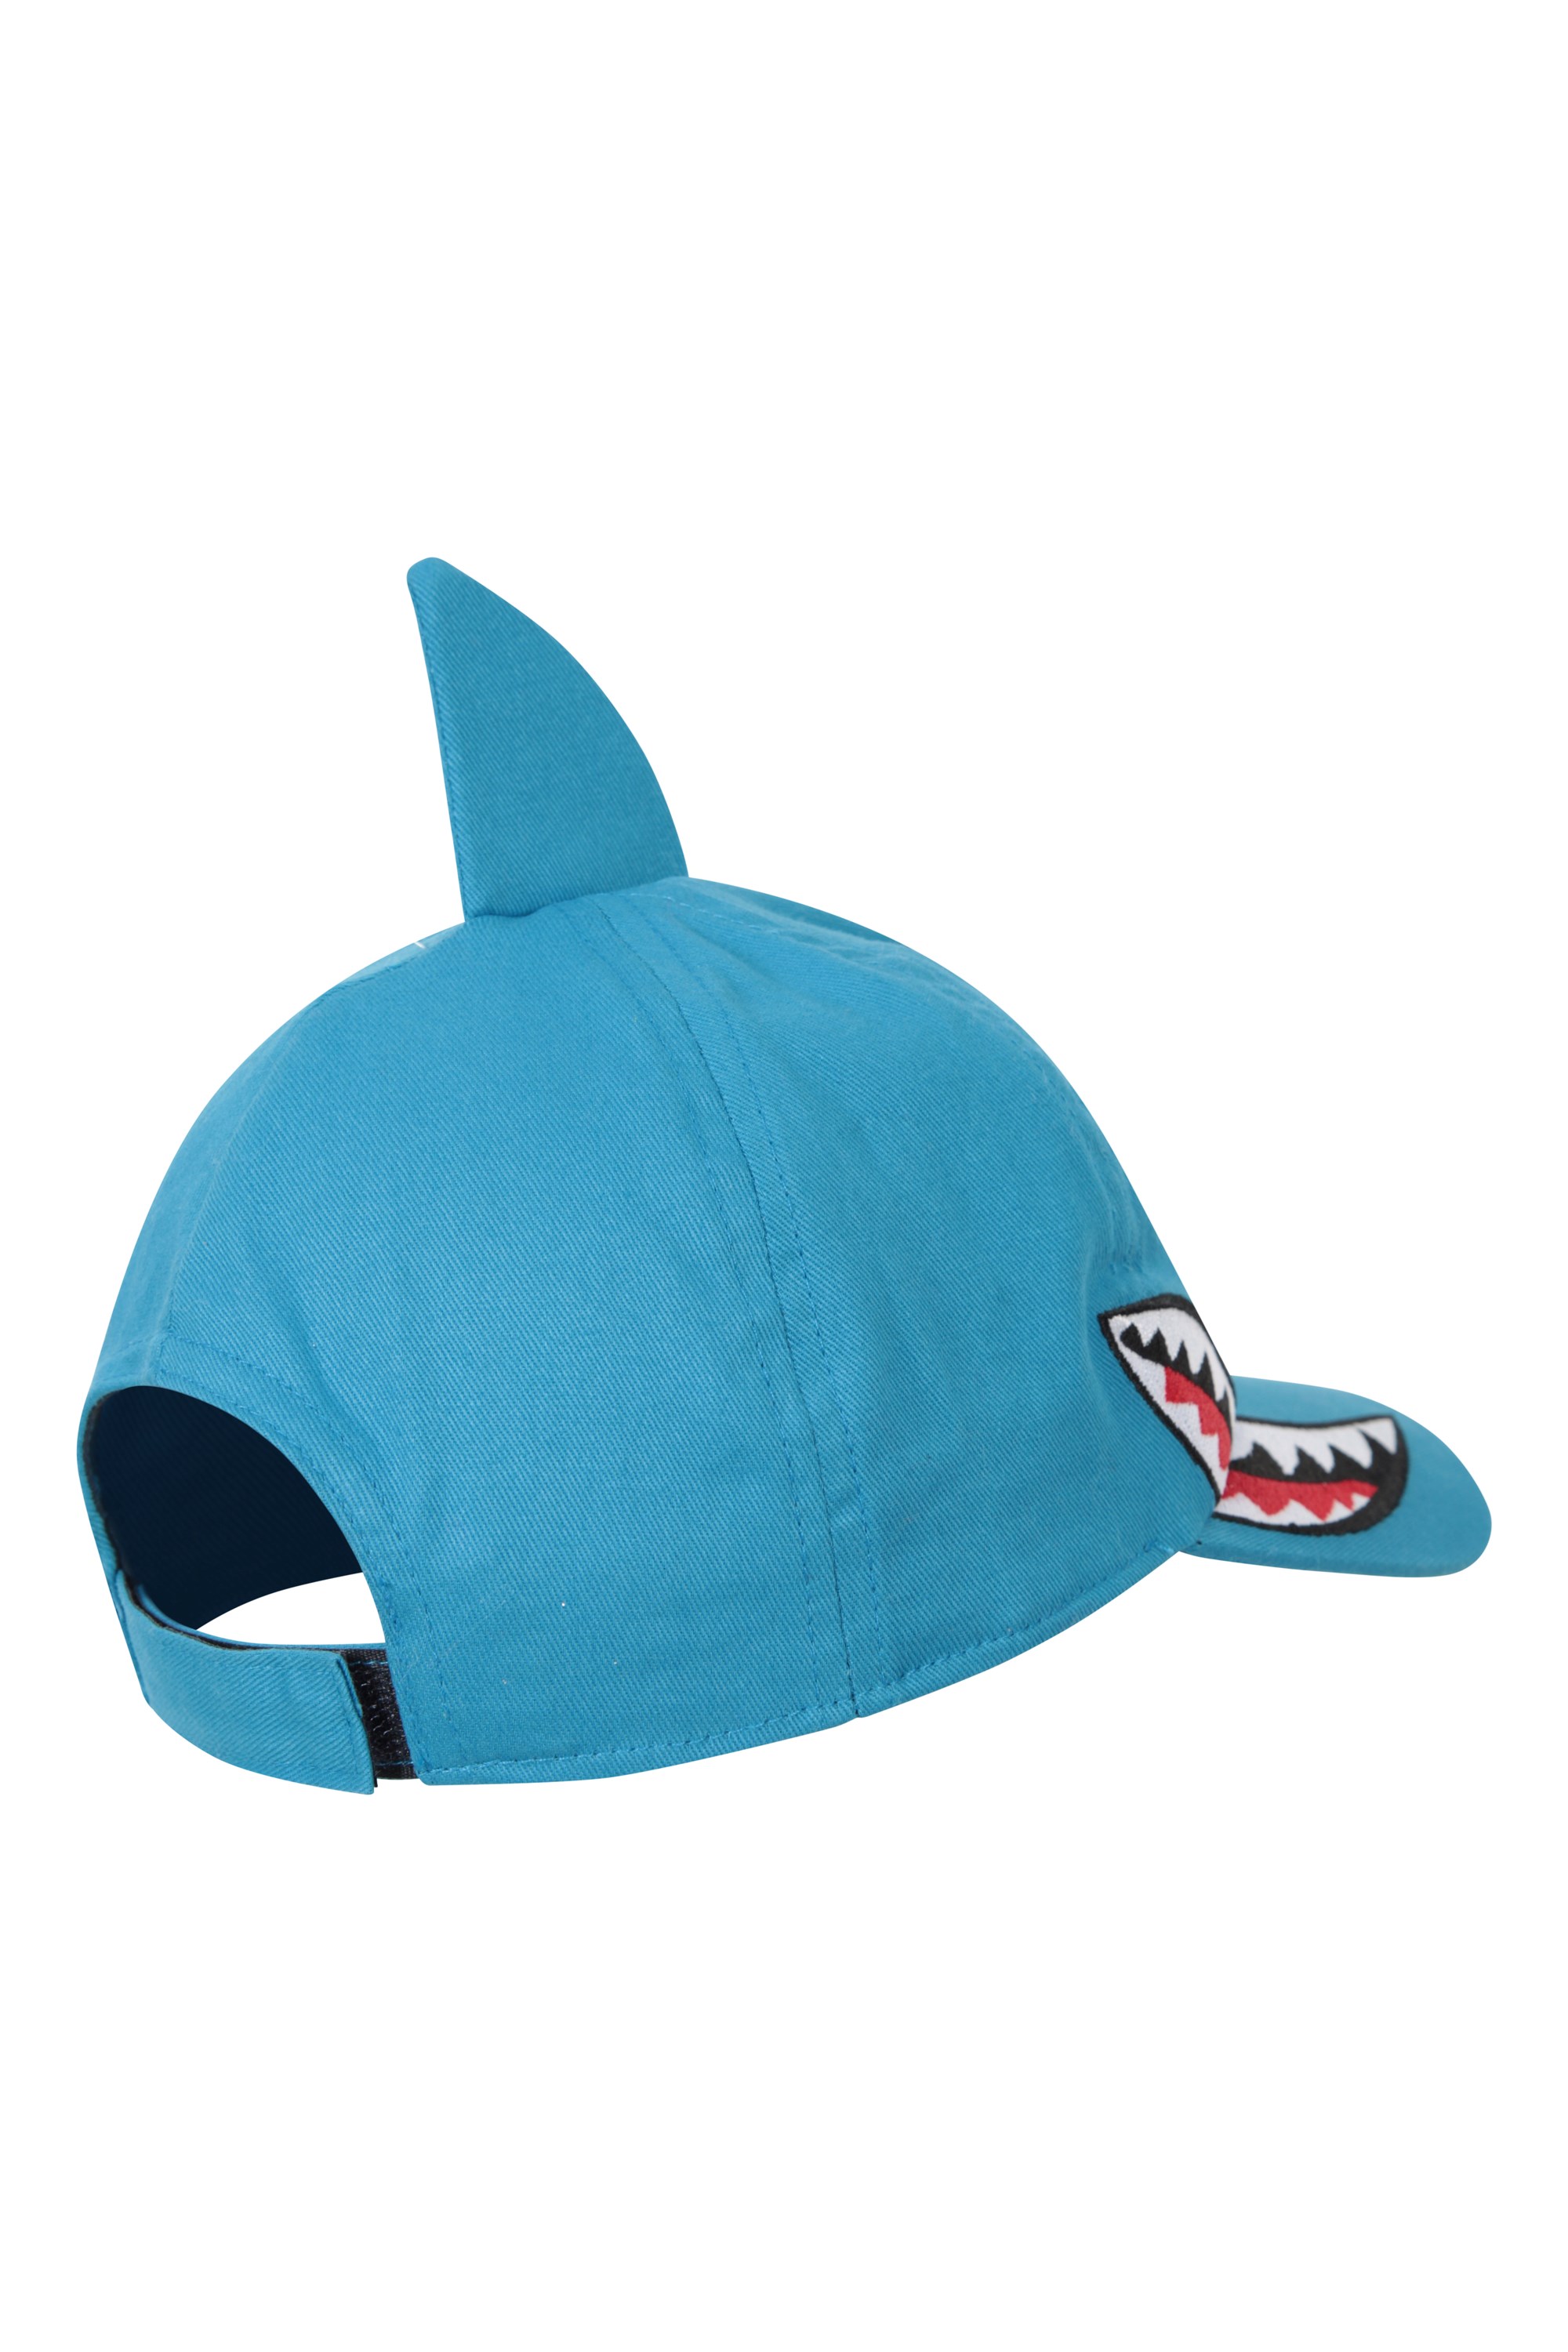 Wholesale B907 BLUE SHARK (52) 52cm AWESOME KIDS BUCKET HAT - Rigon  Headwear Hats - Fieldfolio